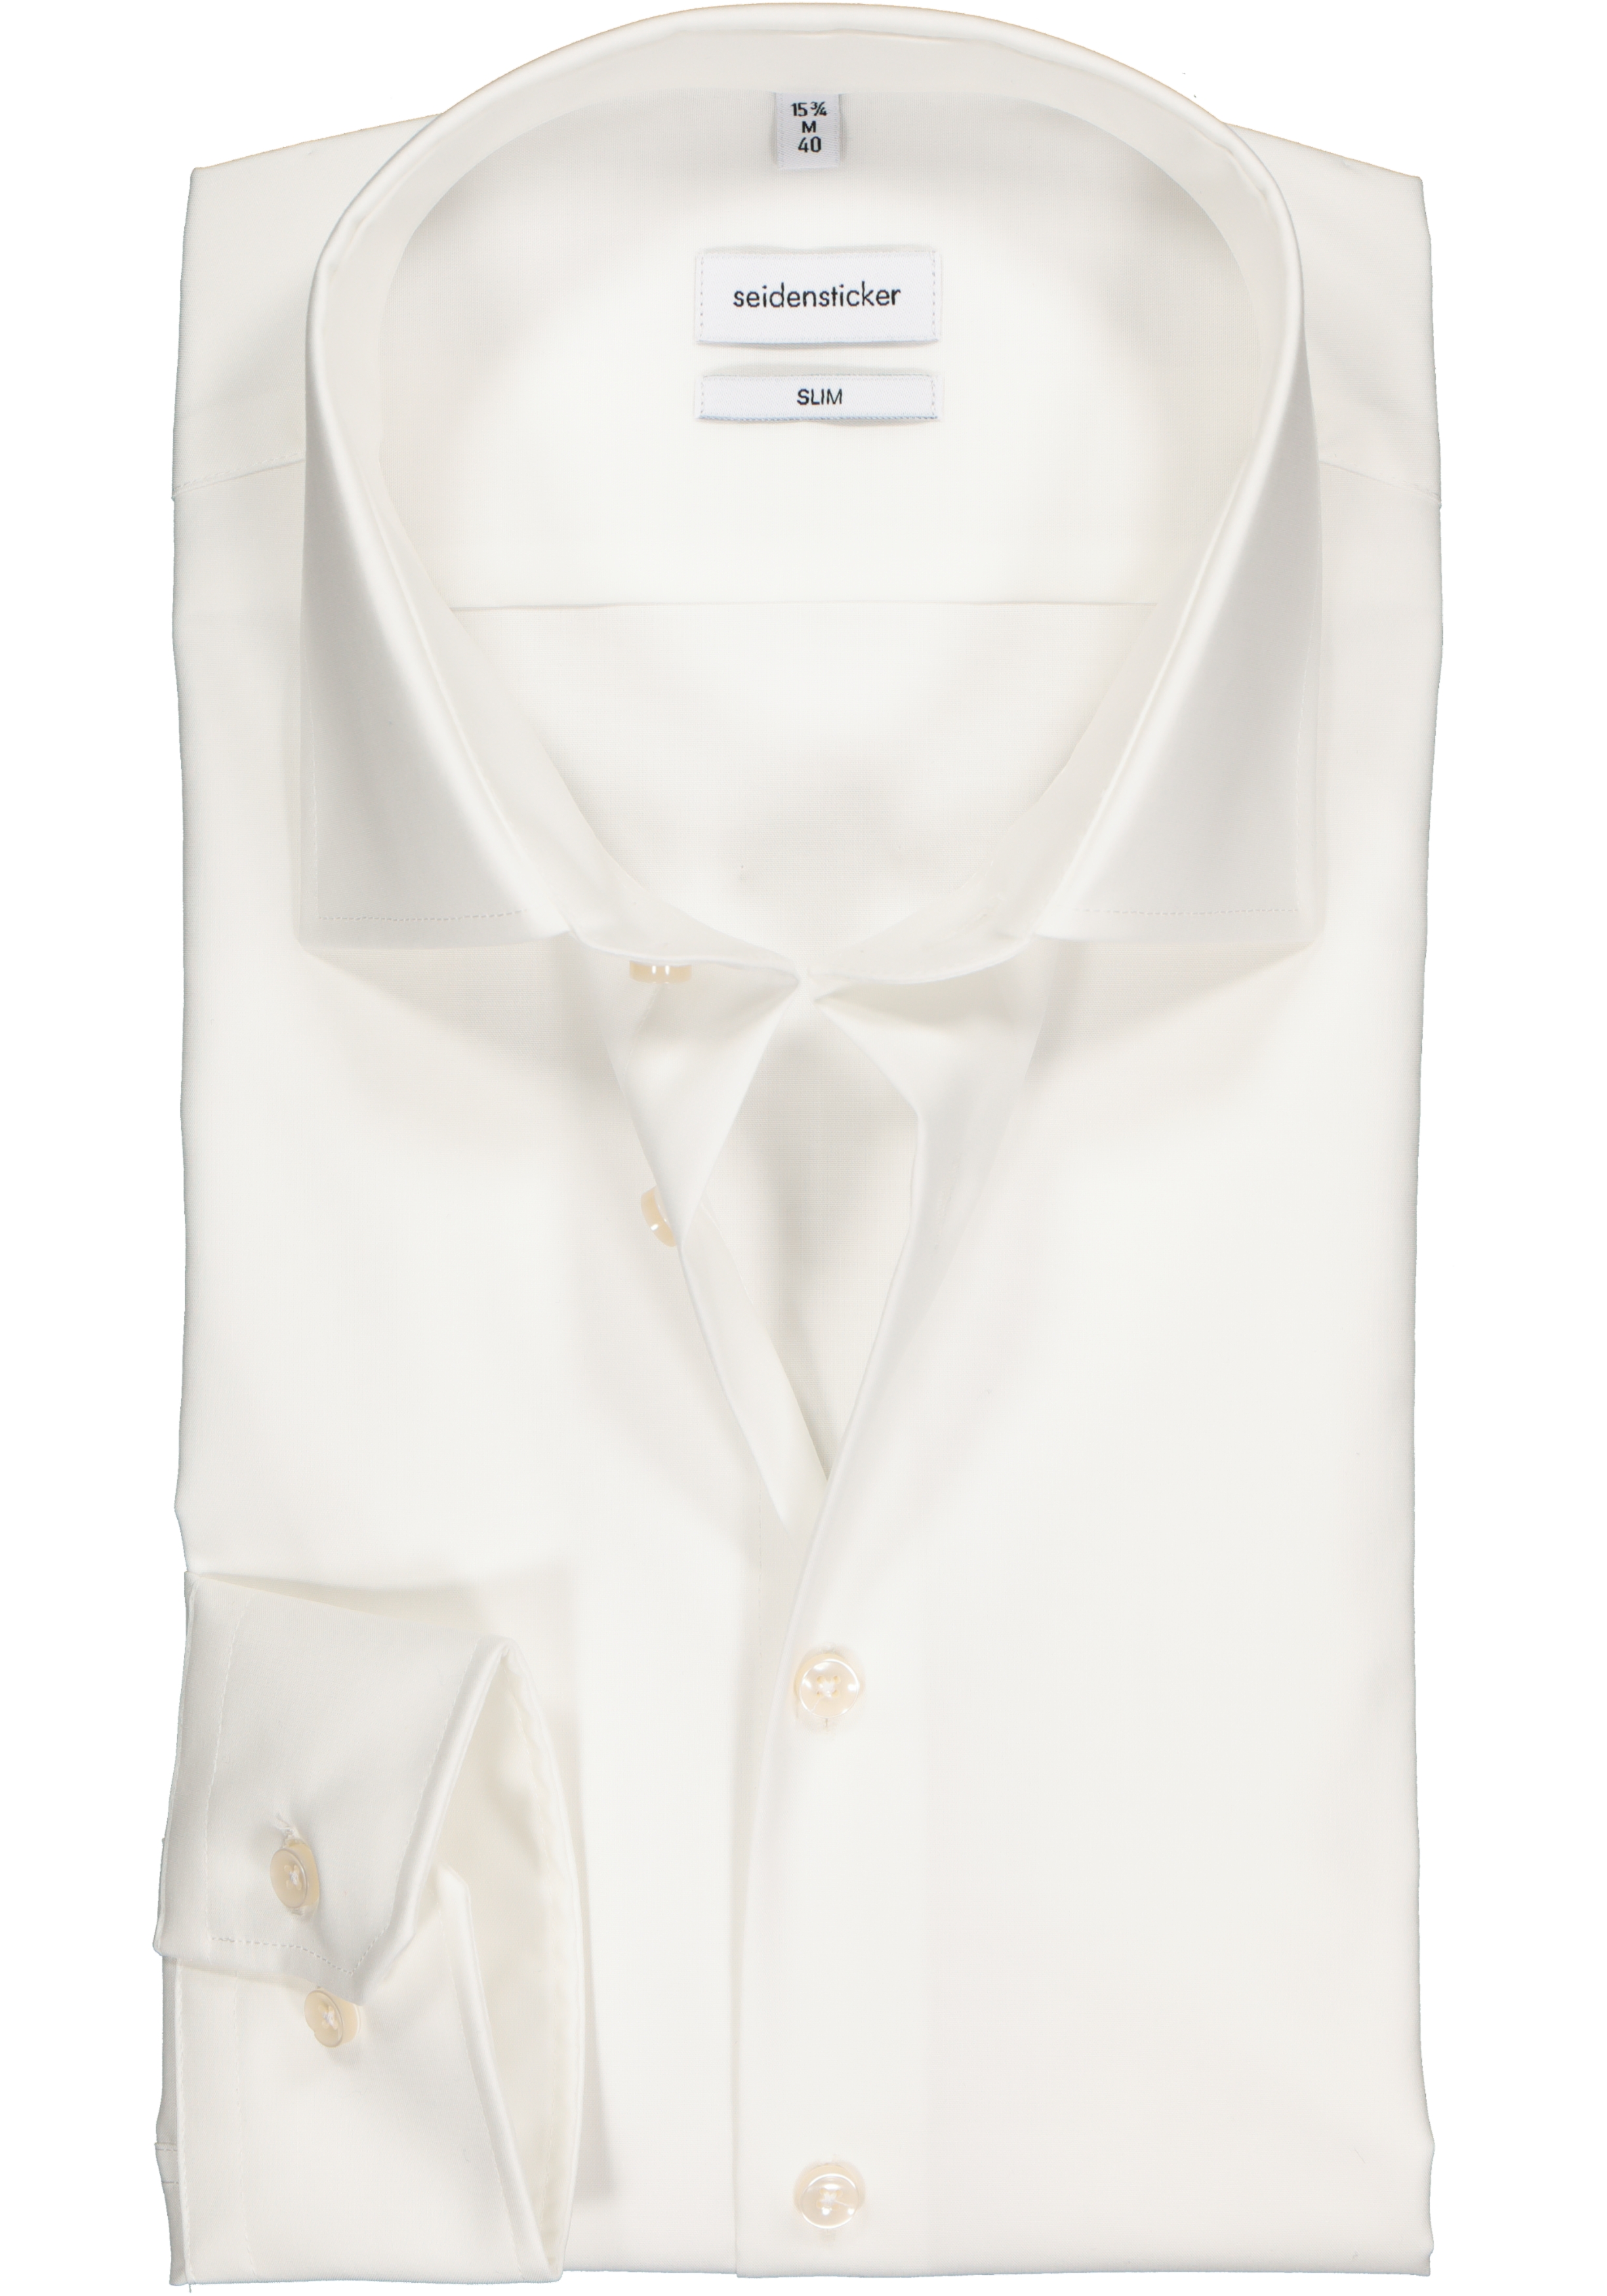 Seidensticker slim fit overhemd, off-white